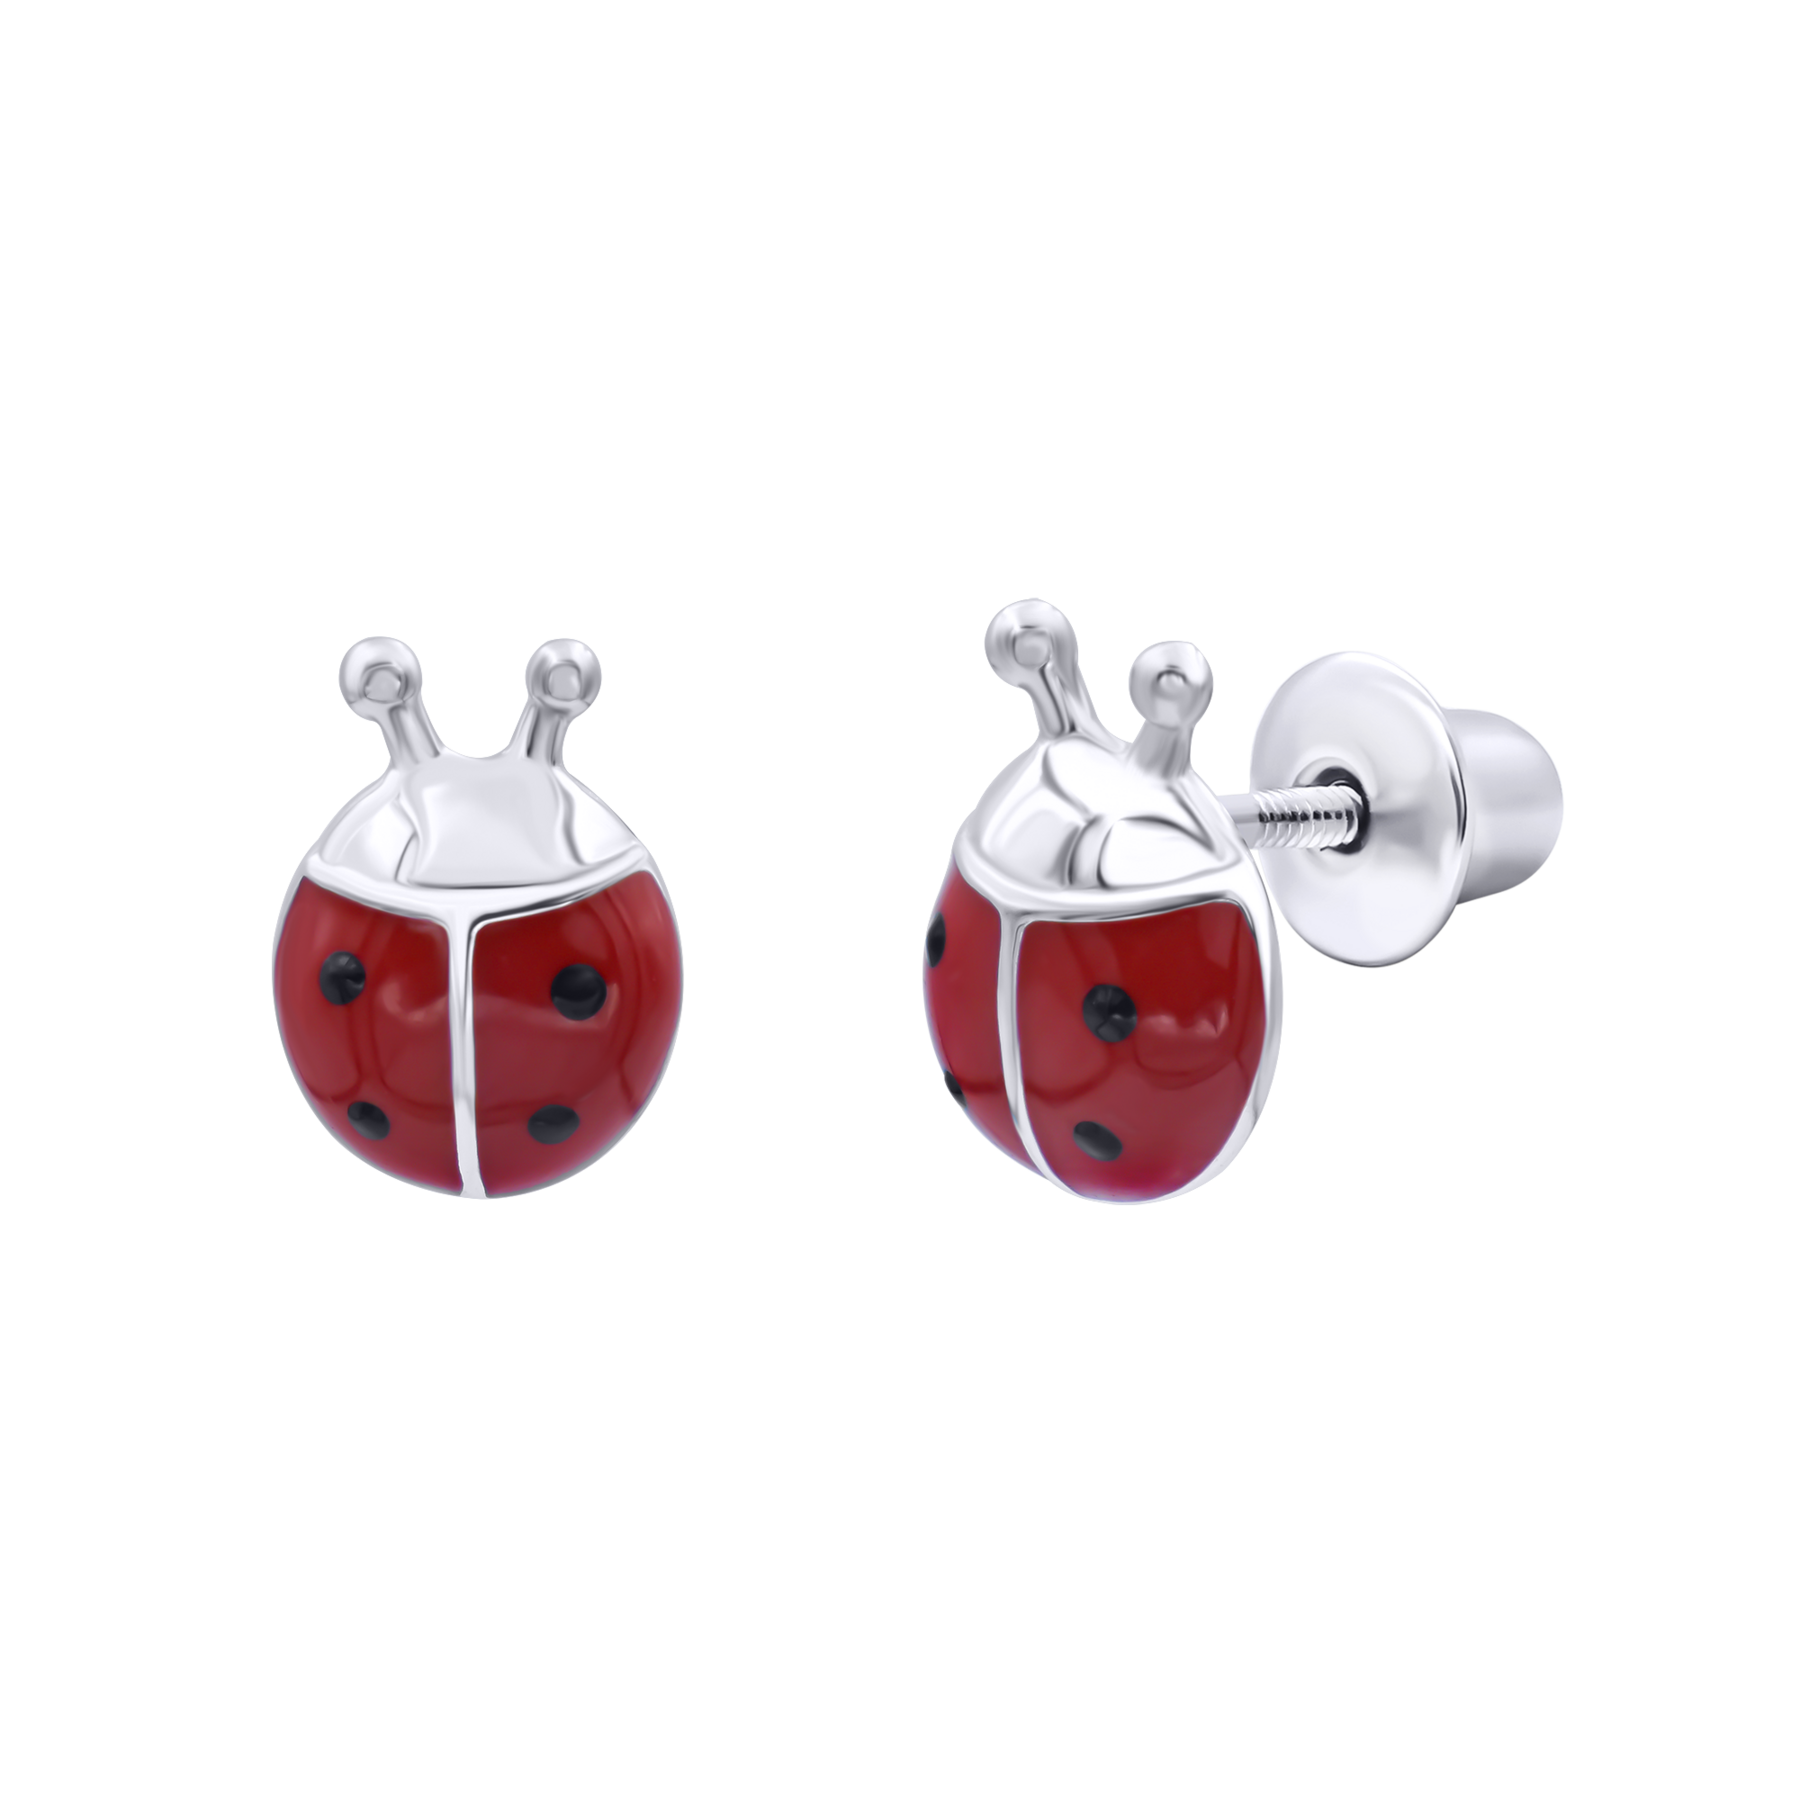 Earrings Ladybug